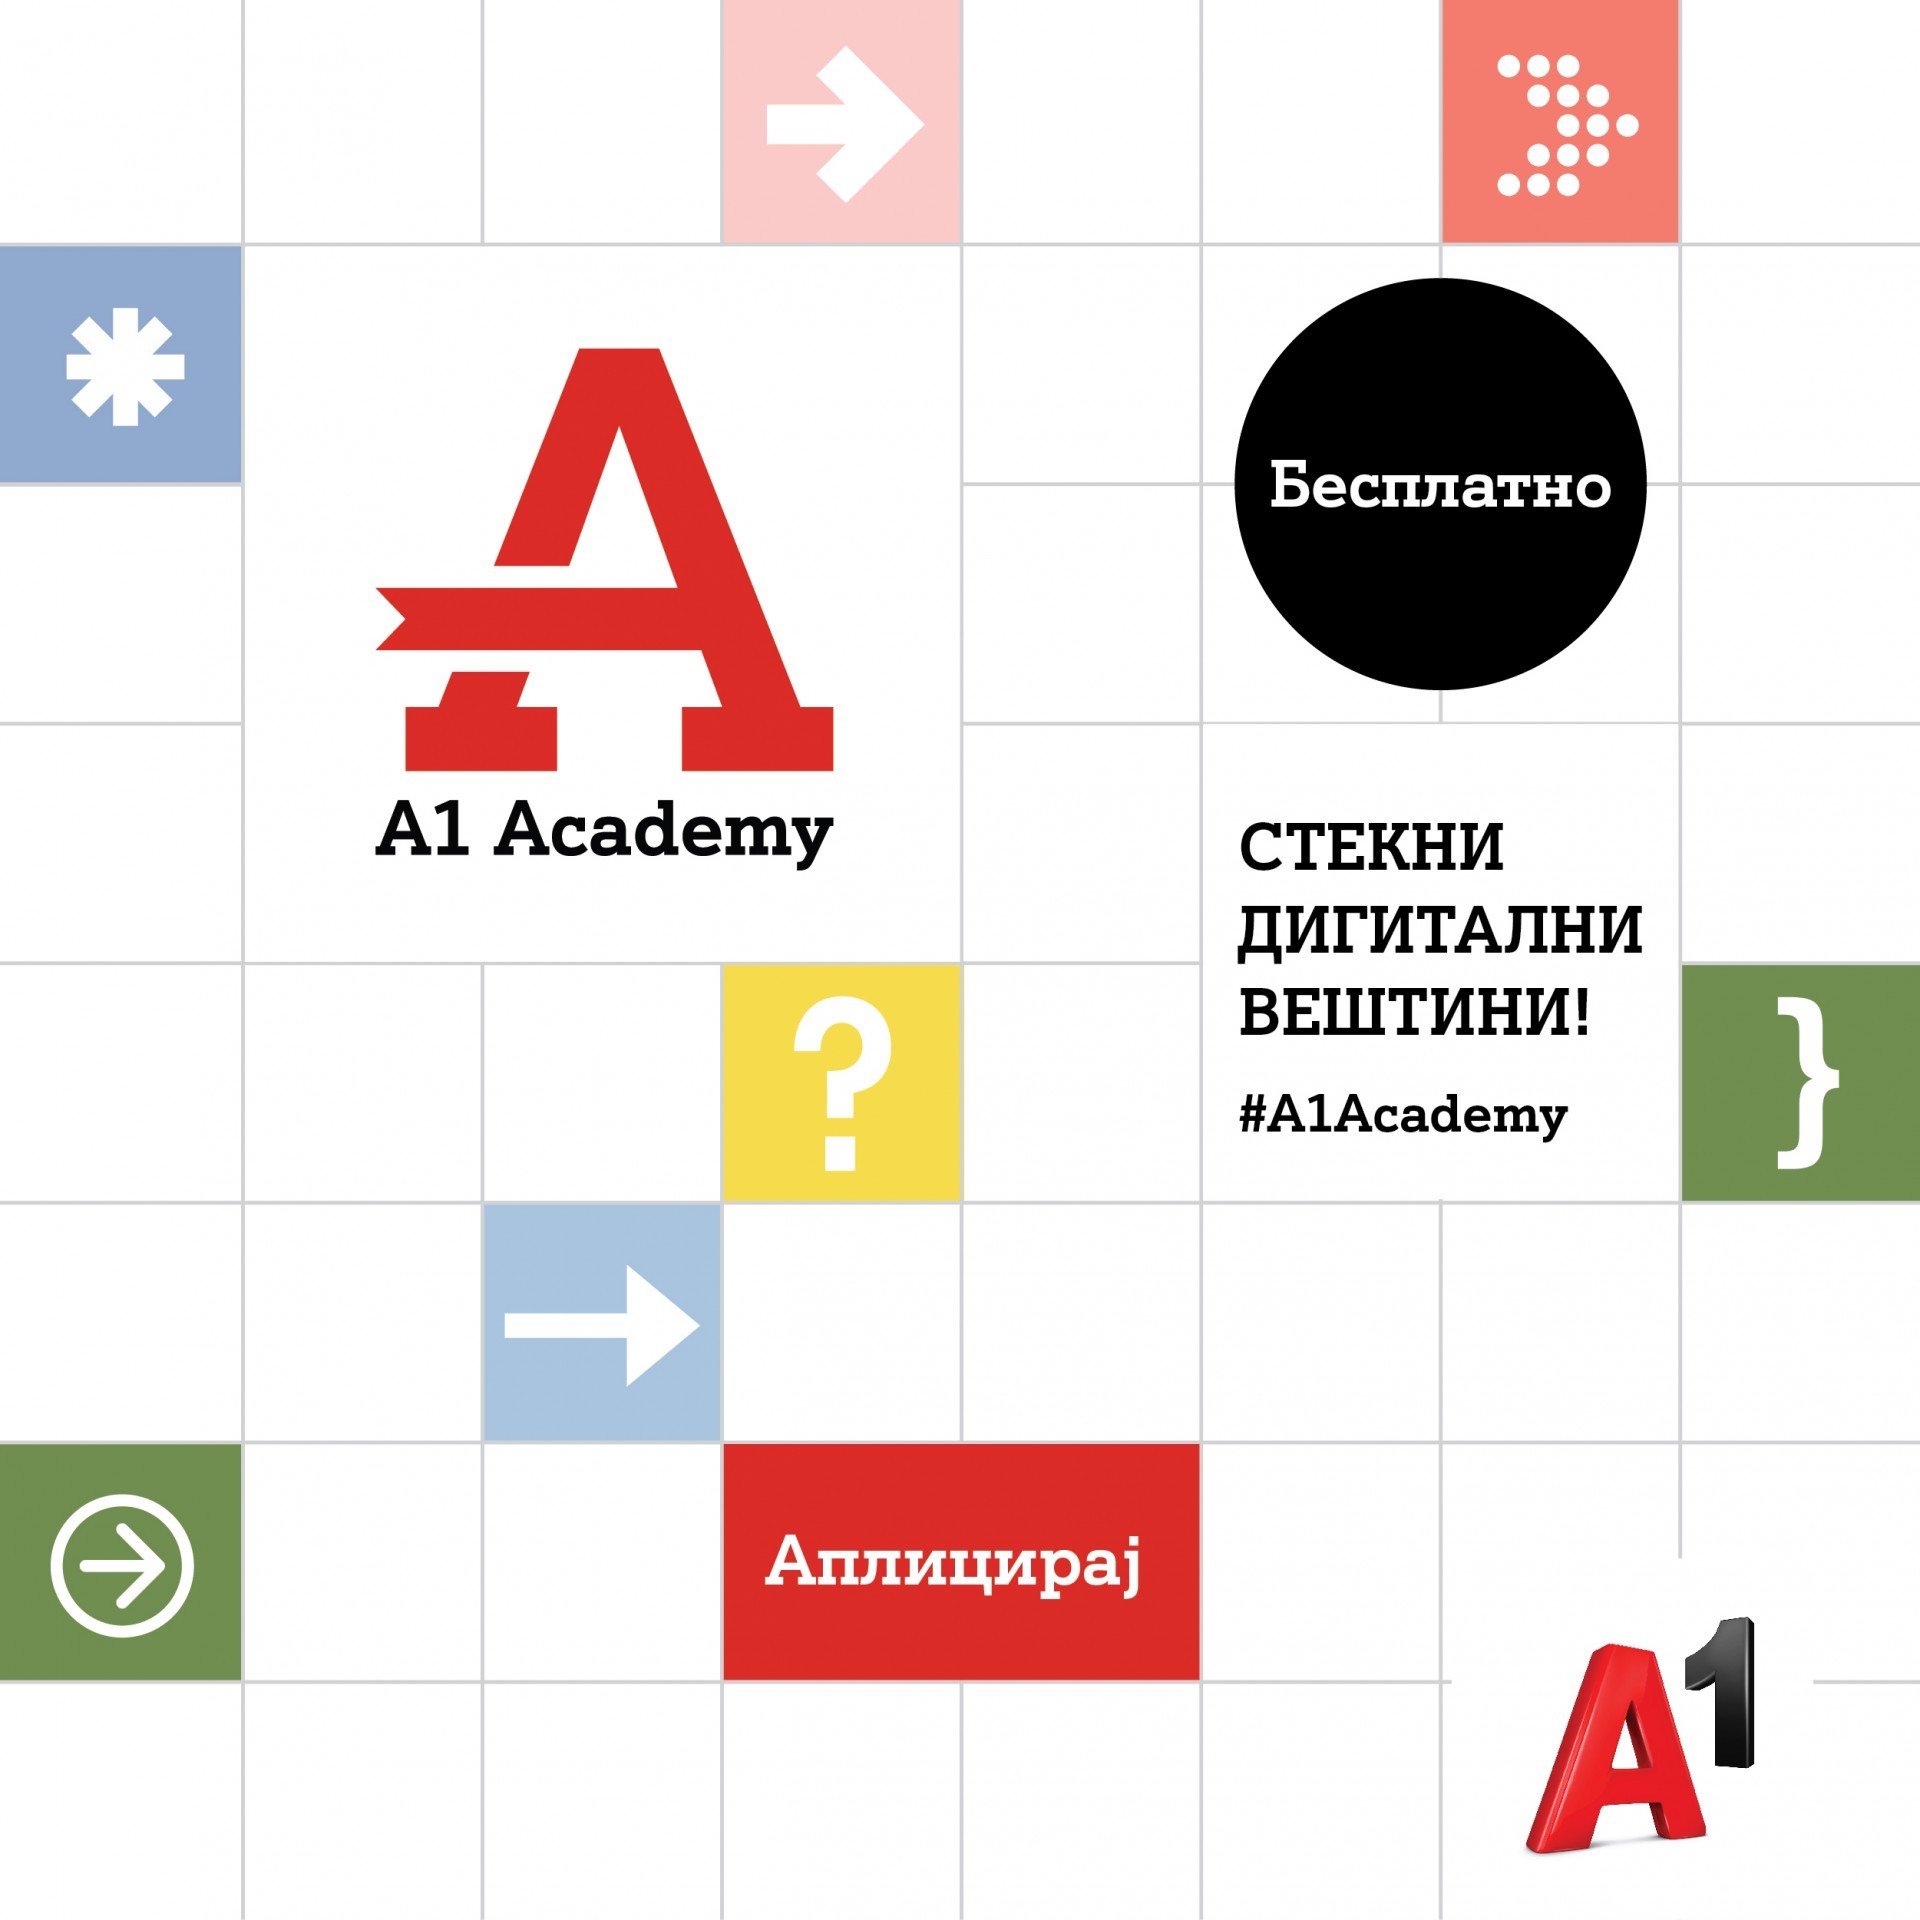 A1 Academy – бесплатна академија за млади за стекнување дигитални вештини